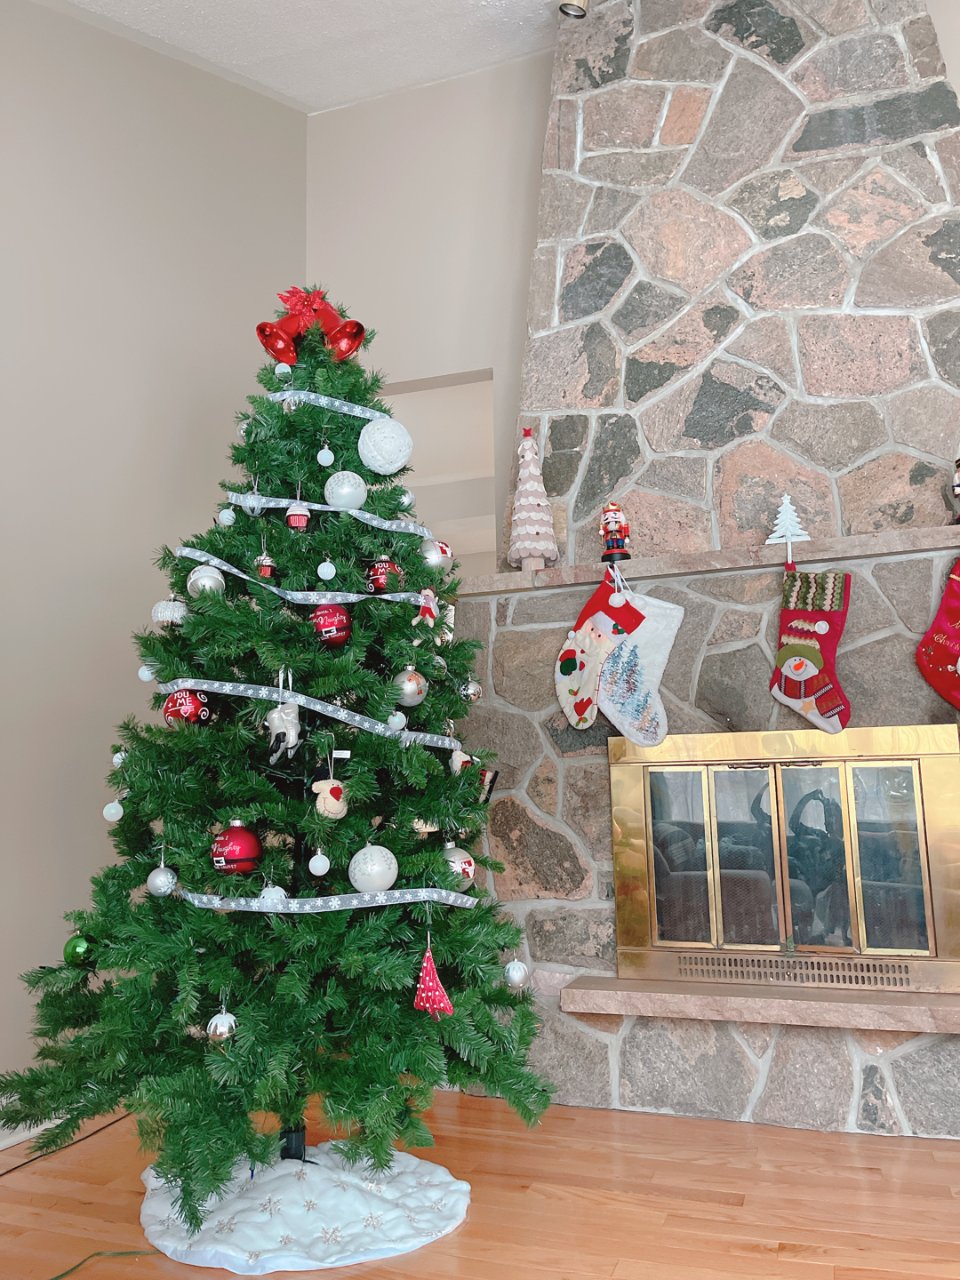 圣诞节🎄之前最快乐的活动：装饰圣诞树☺️...